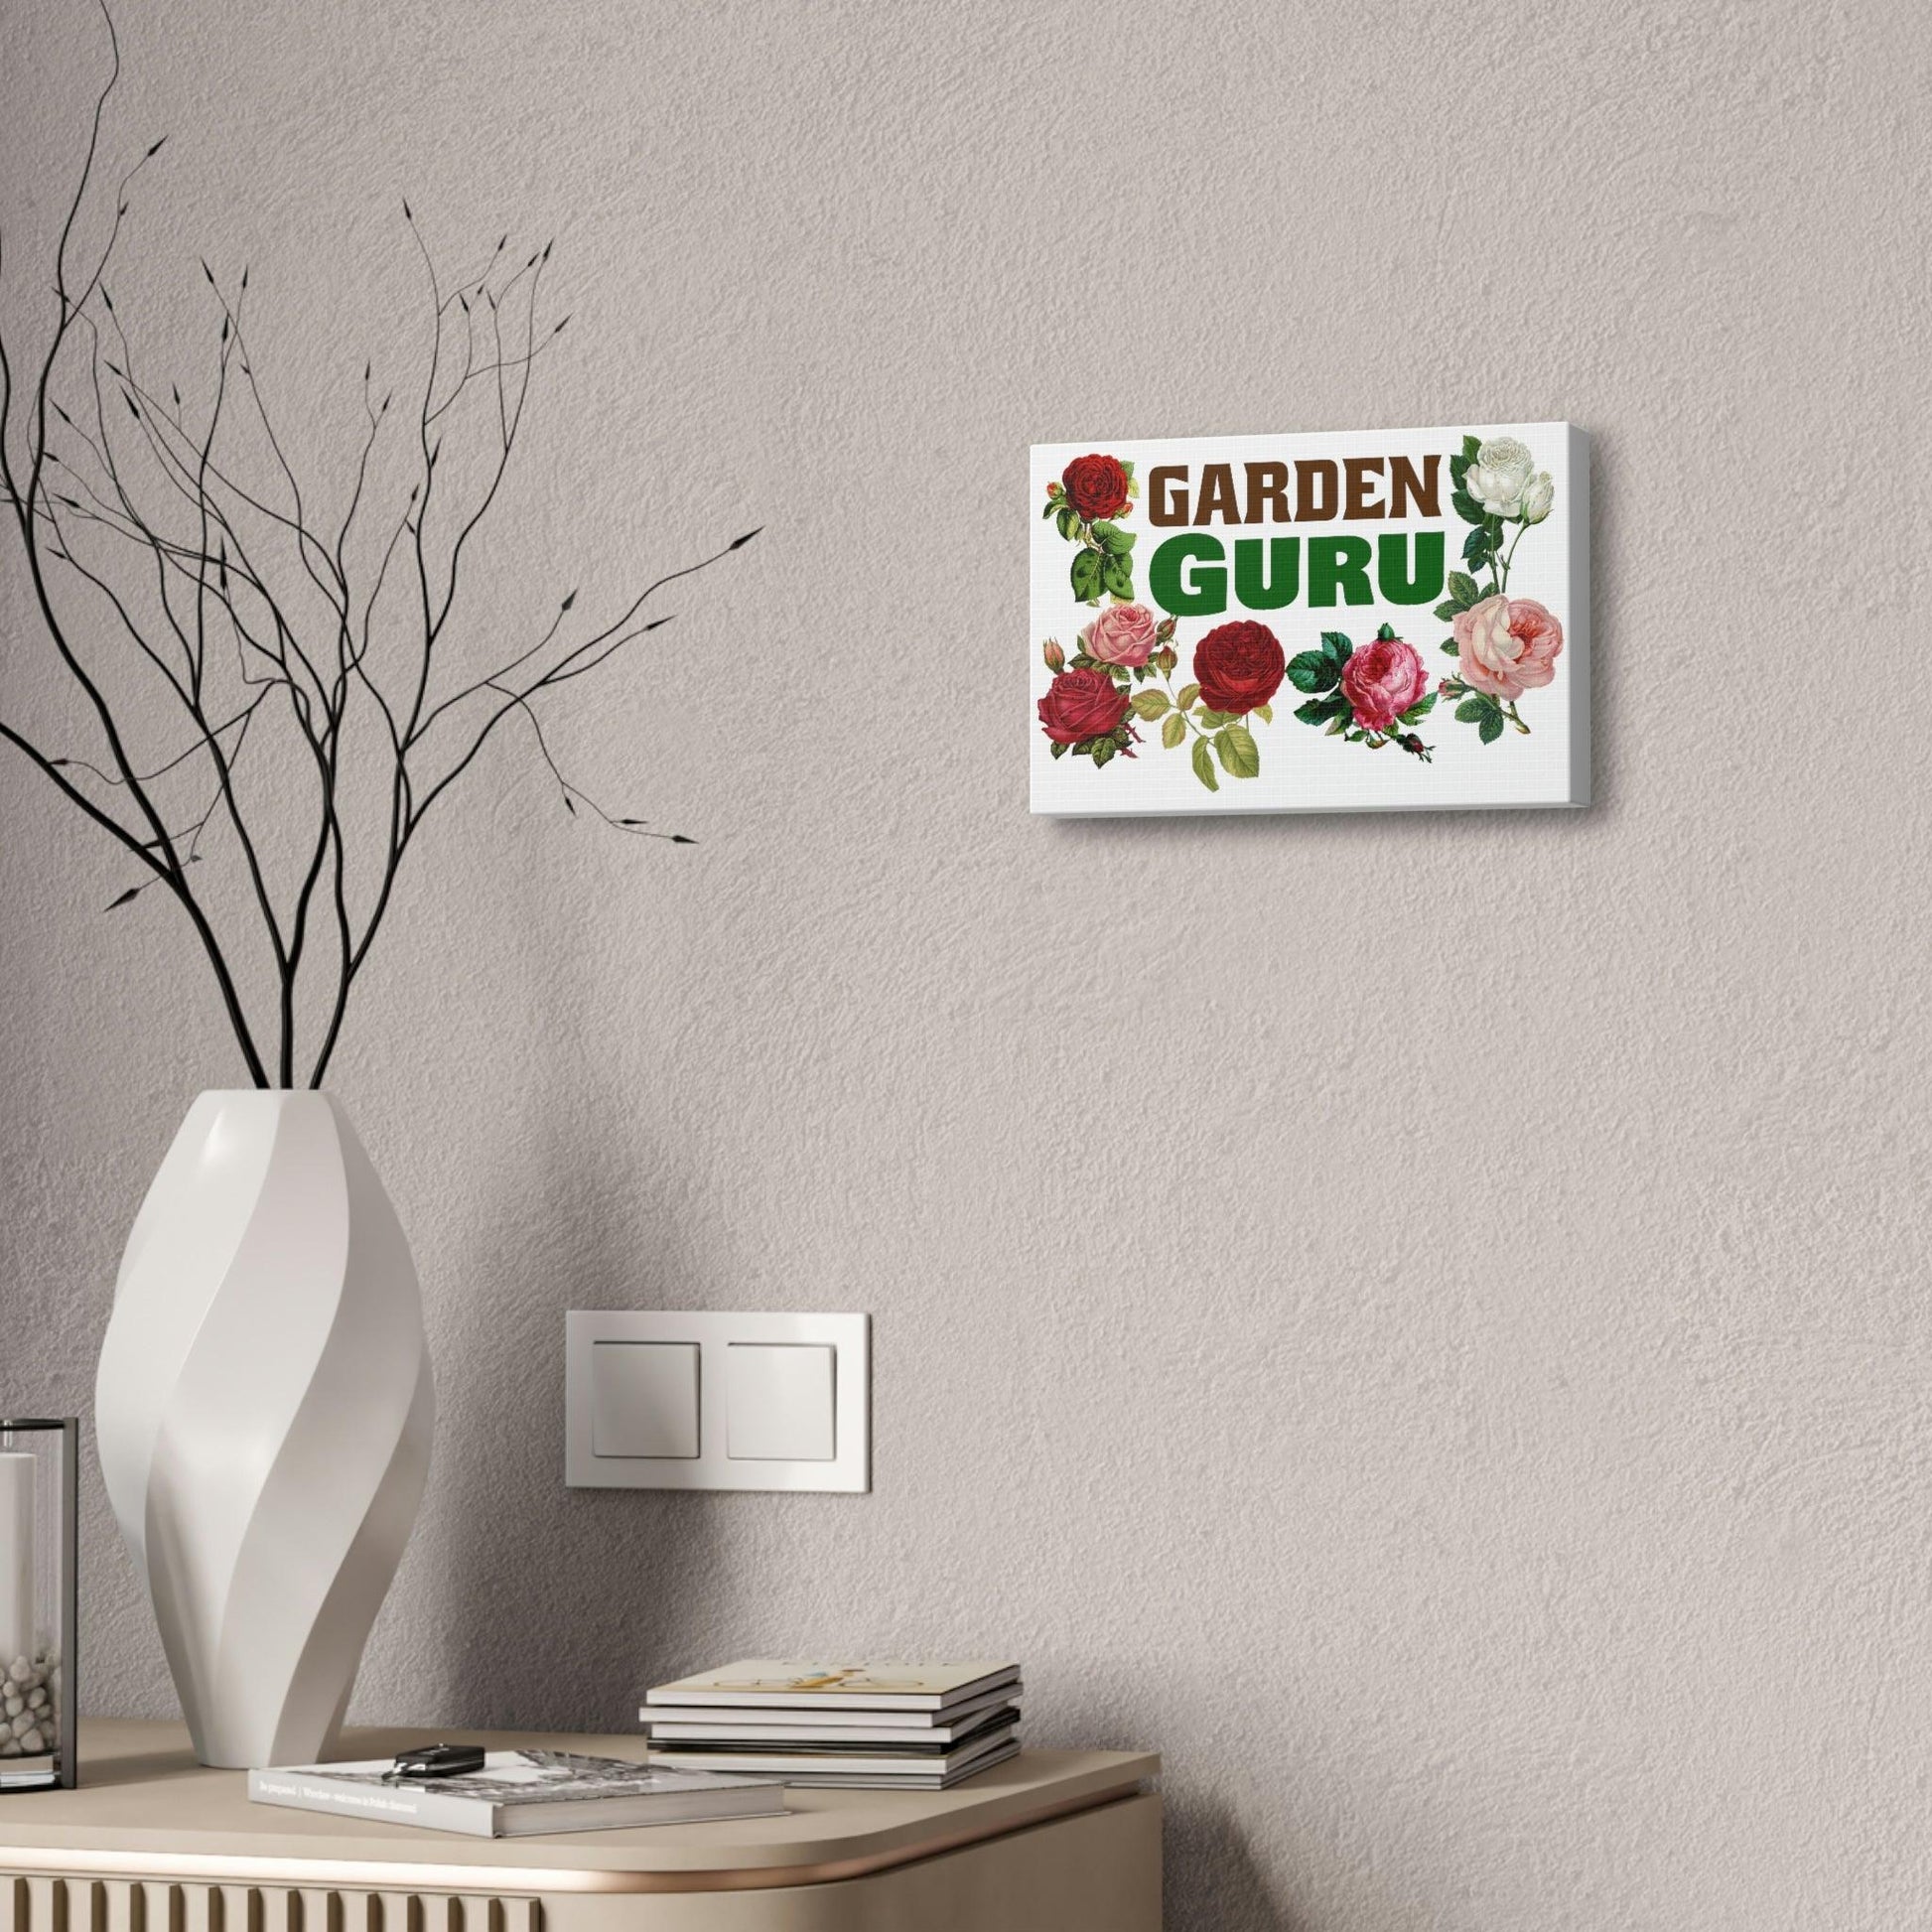 Garden Guru Canvas - Garden wall arts, gift for garden lovers - Giftsmojo